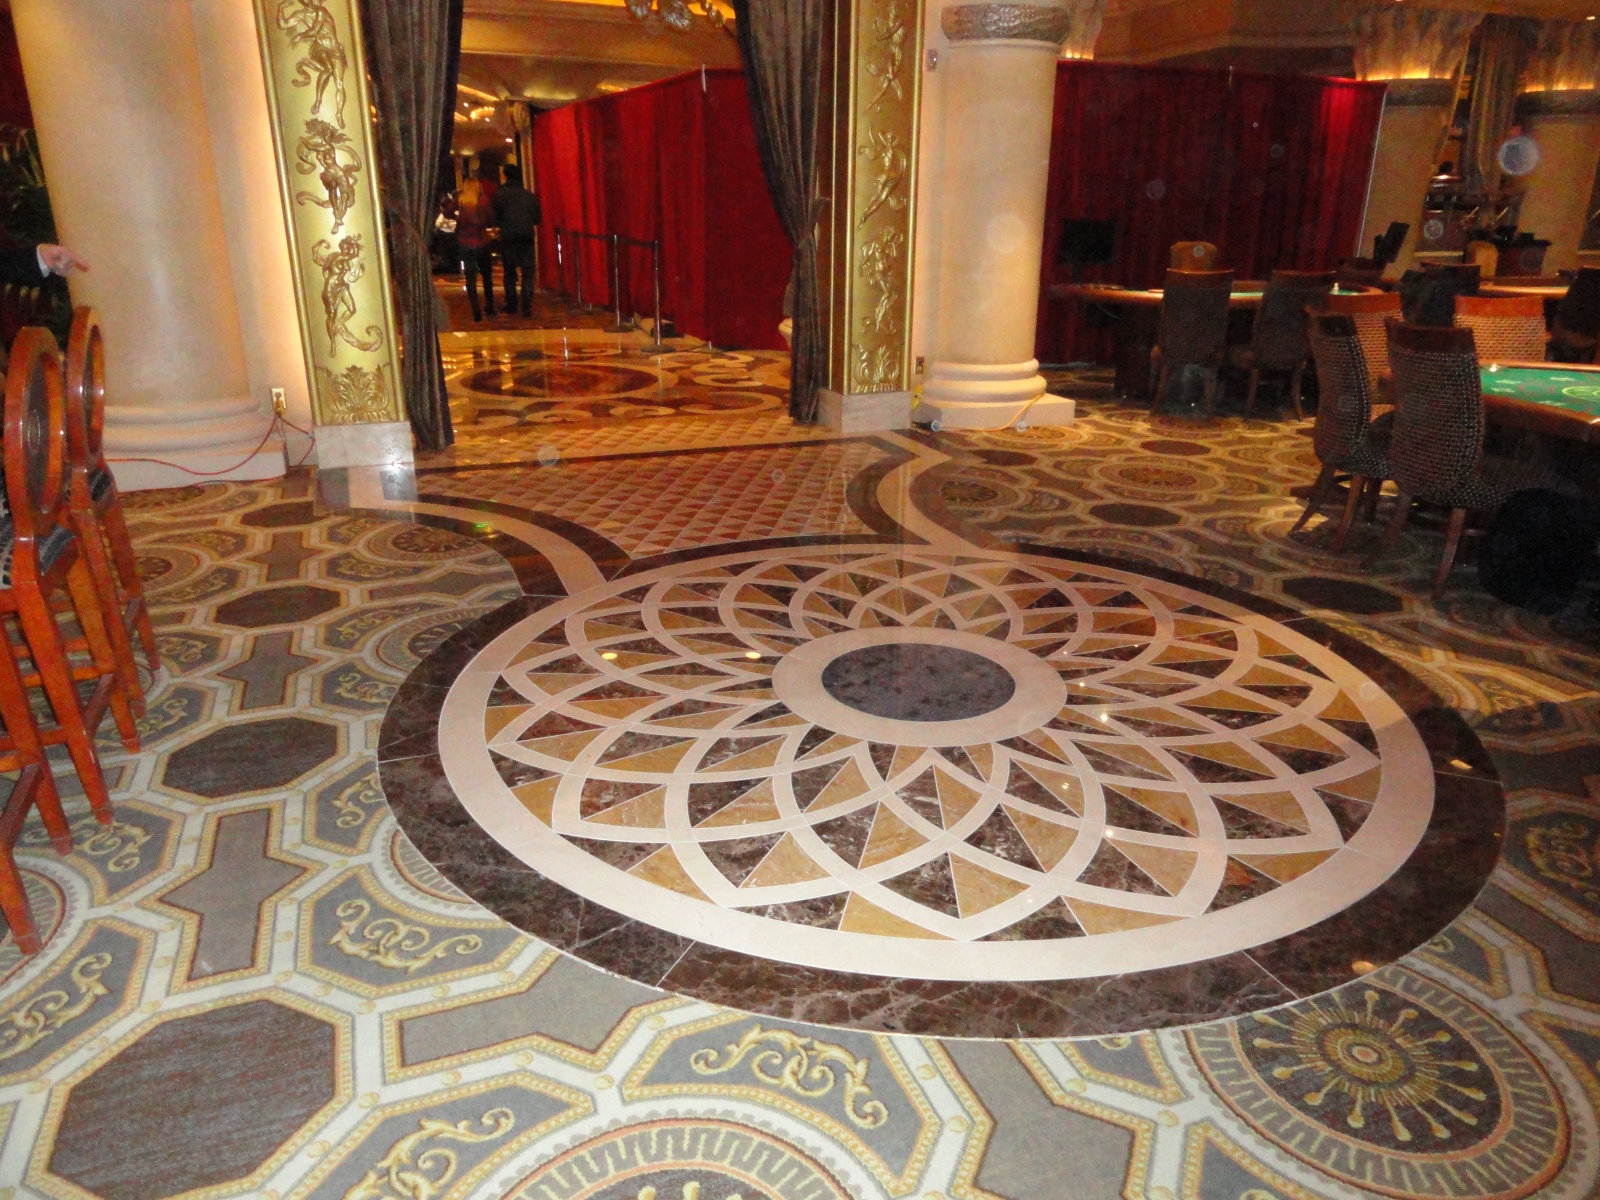 Bellagio Hotel & Casino - Superior Tile & Marble